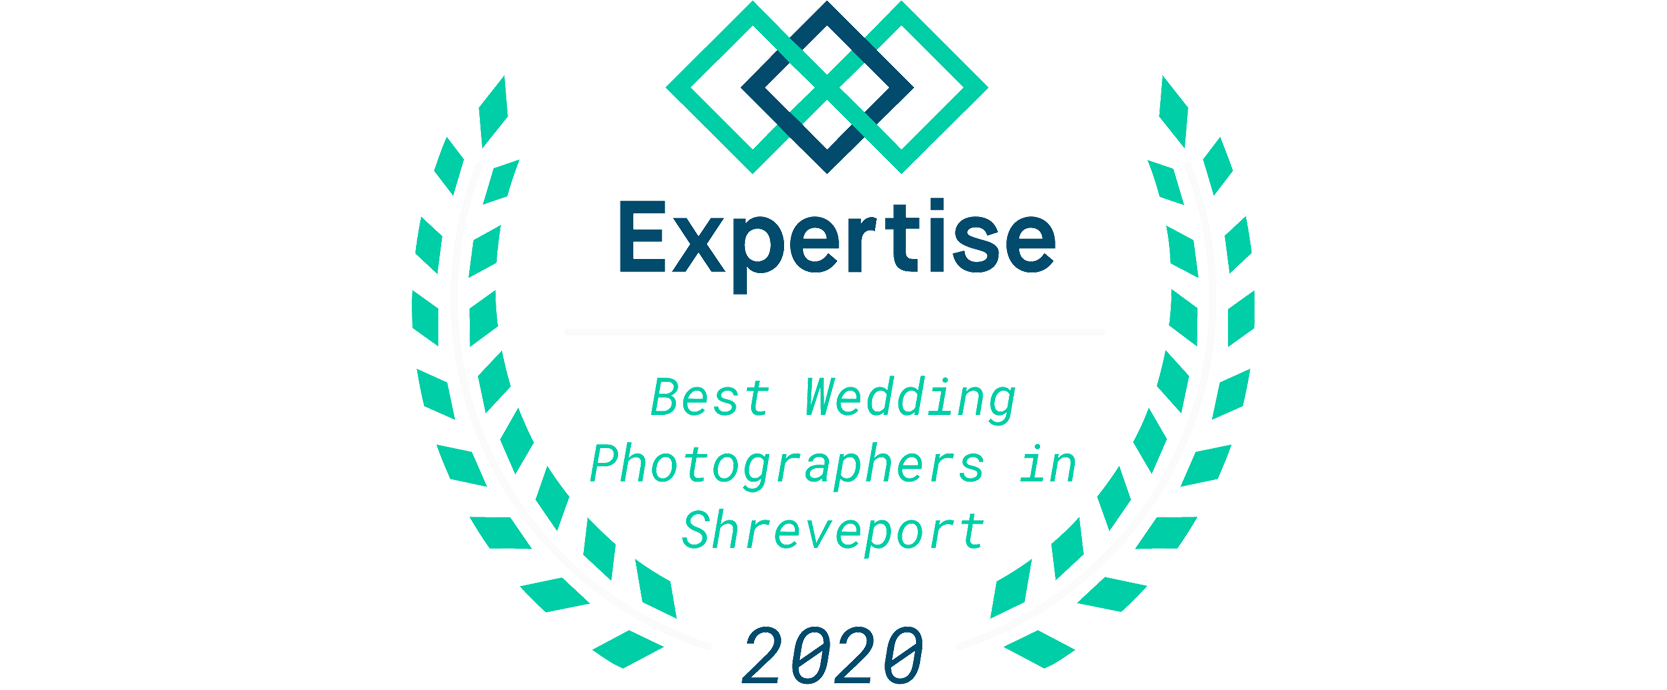 la_shreveport_wedding-photography_2020_0002_Layer-1.png